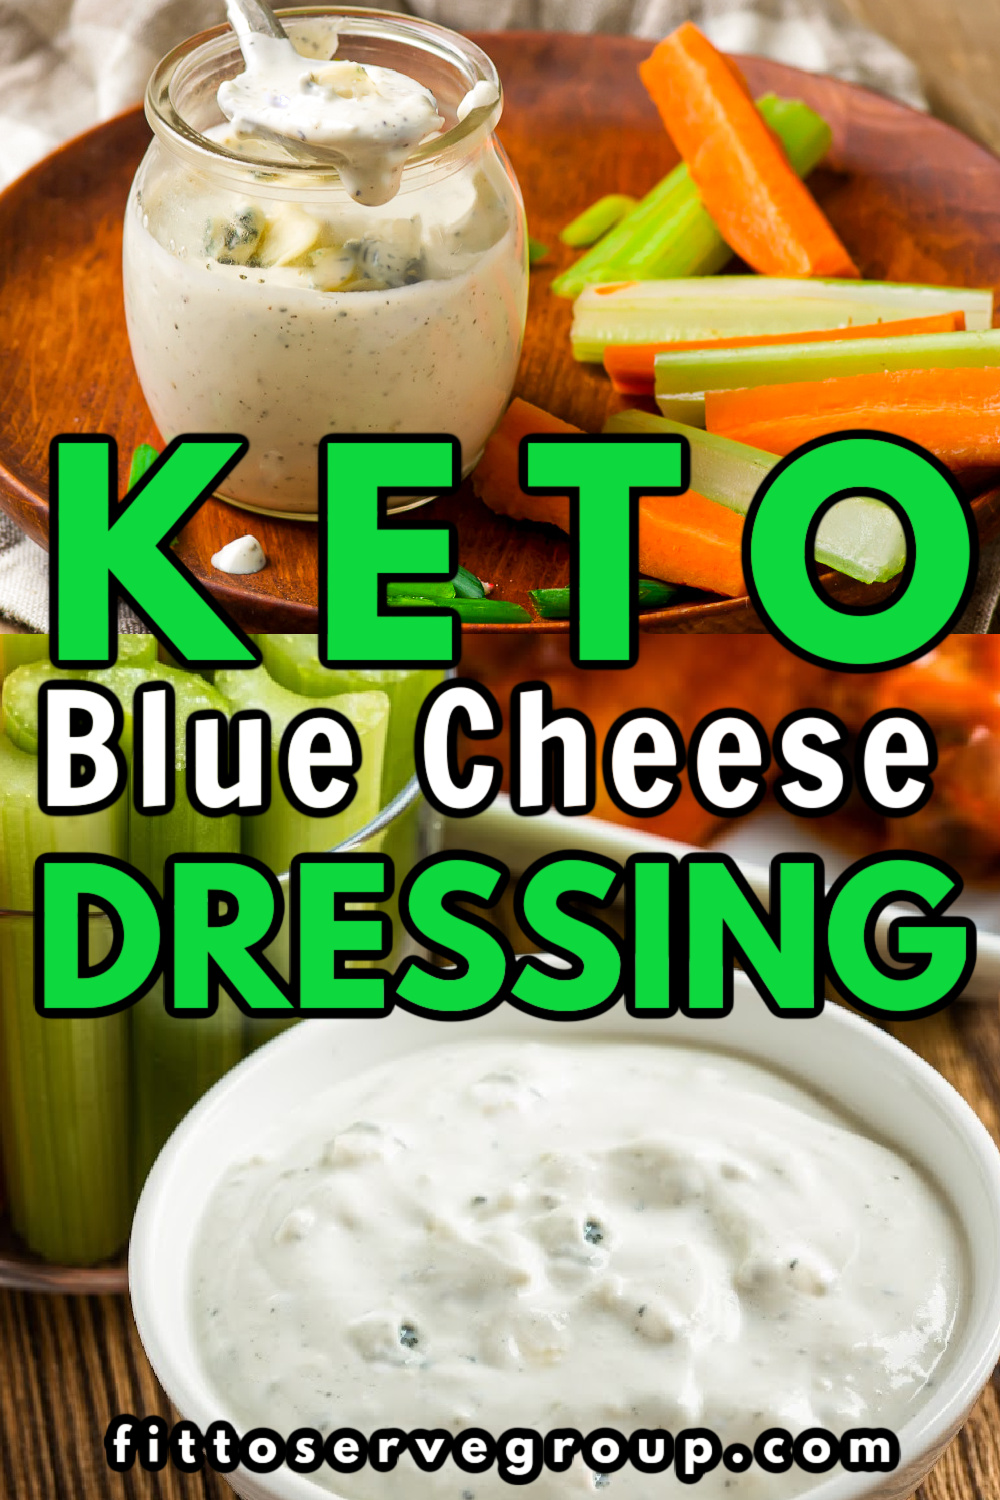 Keto-Friendly Blue Cheese Dressing